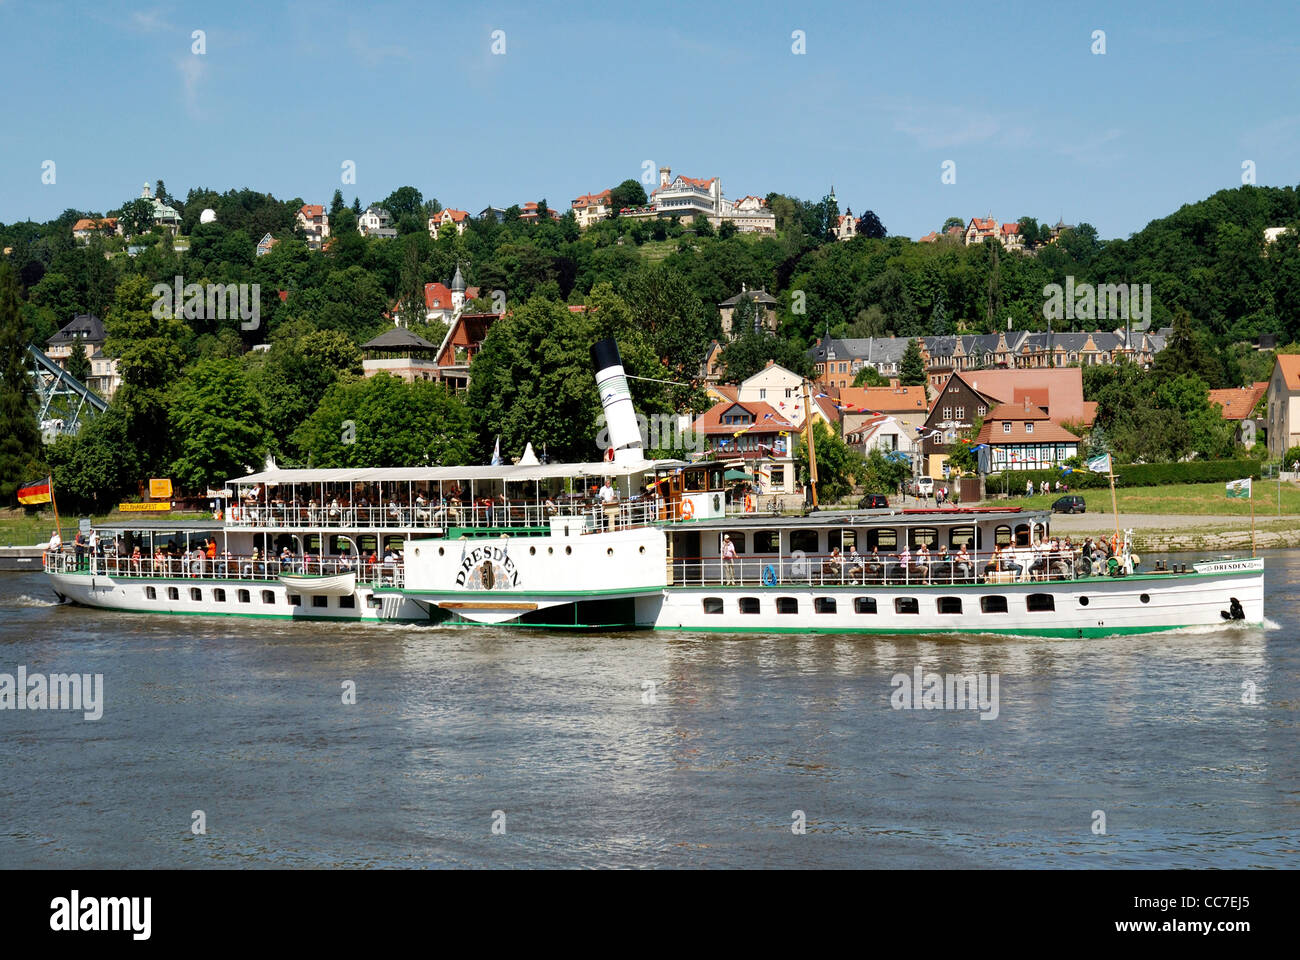 Barco de vapor histórico sobre el río Elba en Dresde. Foto de stock